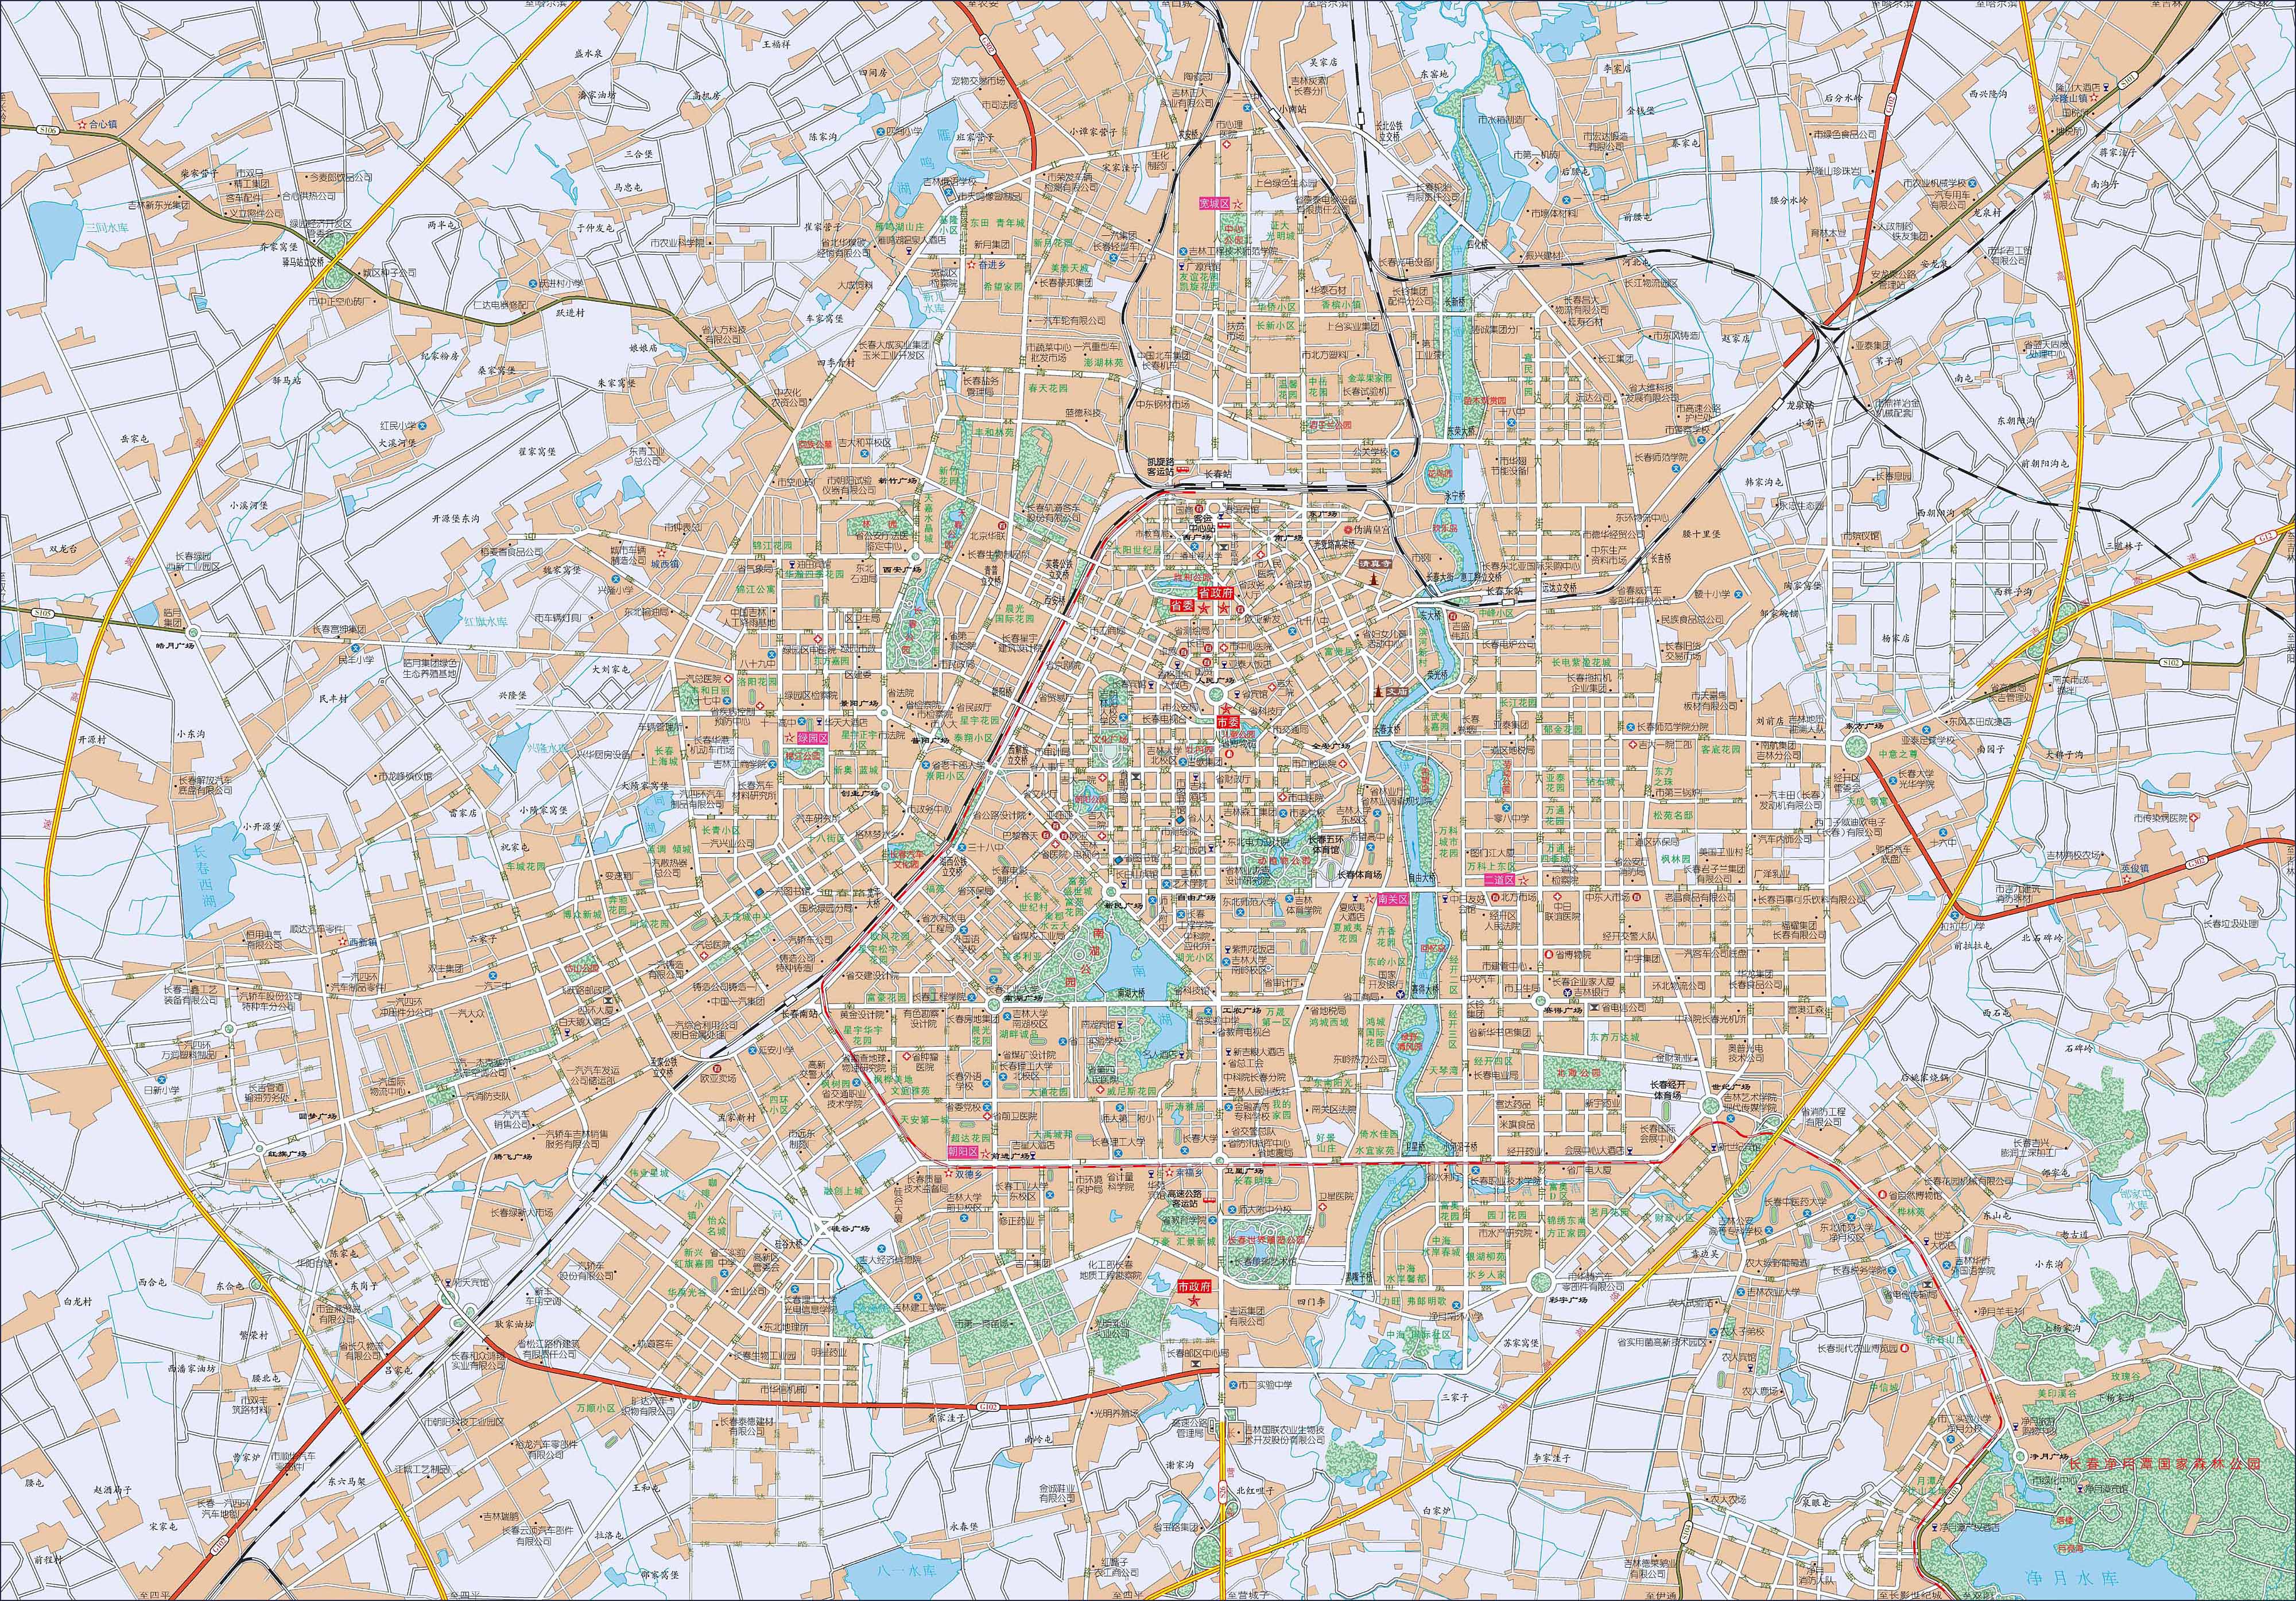 长春市城区地图